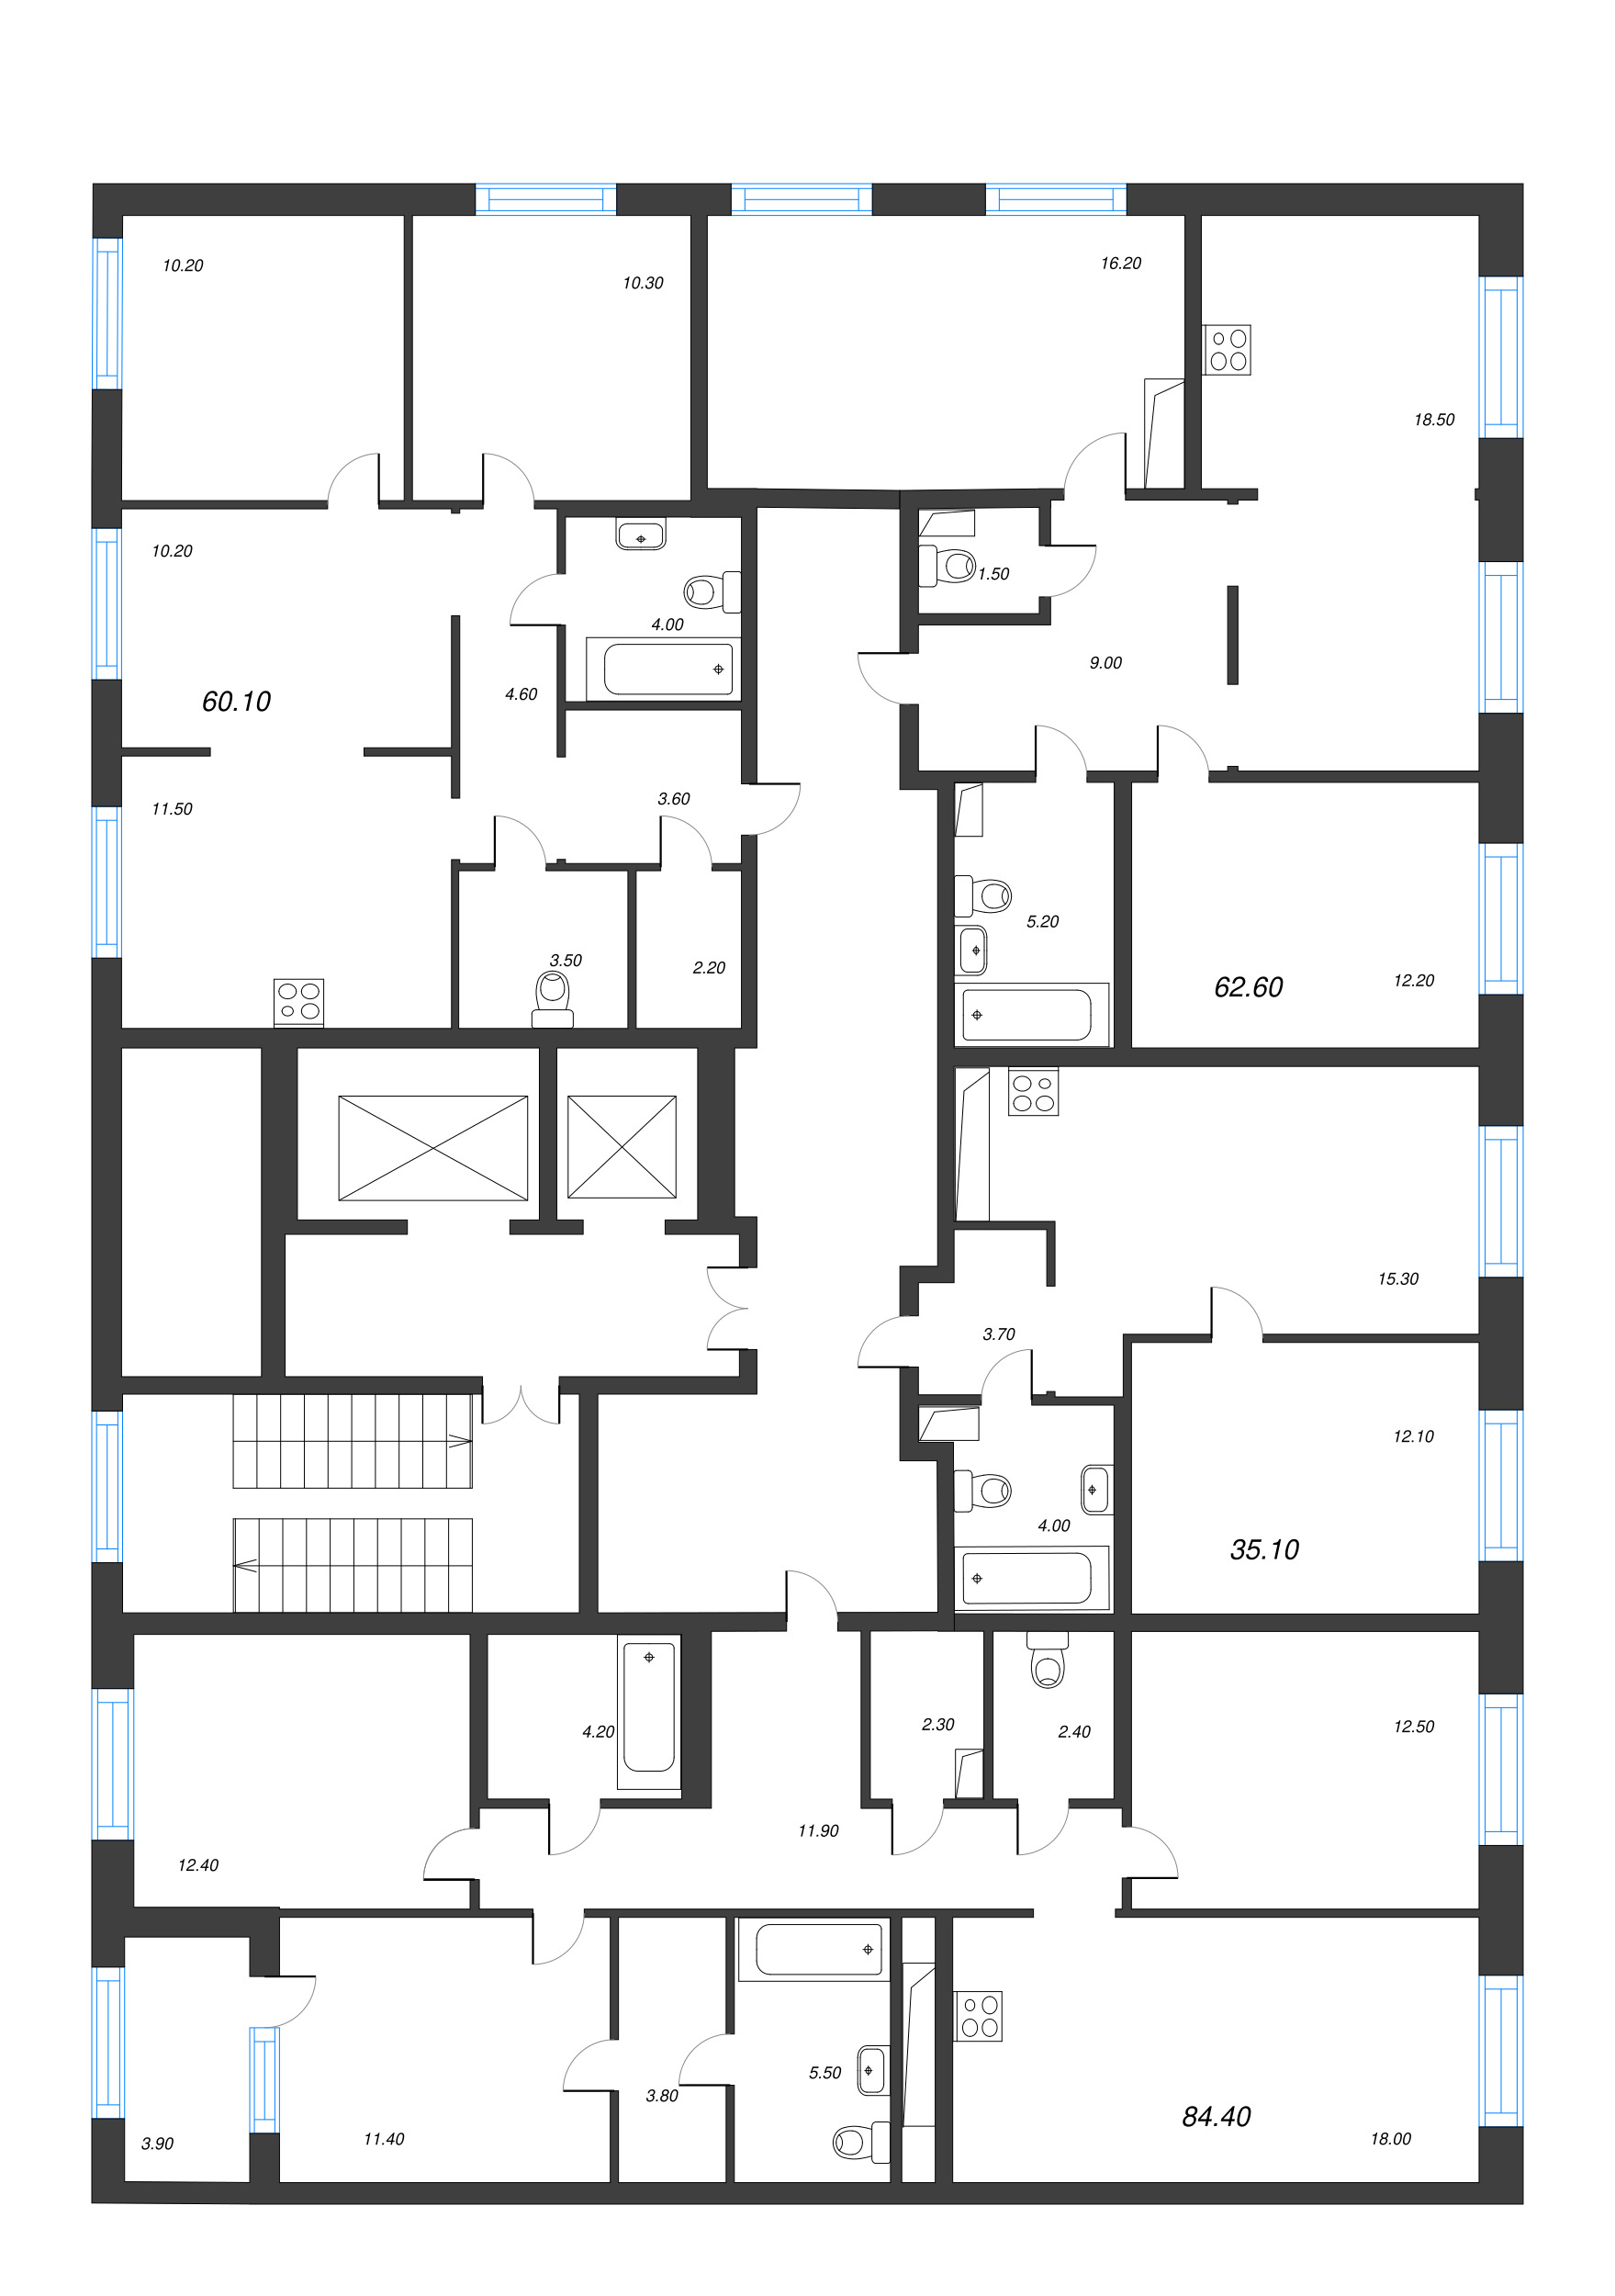 4-комнатная (Евро) квартира, 84.4 м² в ЖК "Струны" - планировка этажа